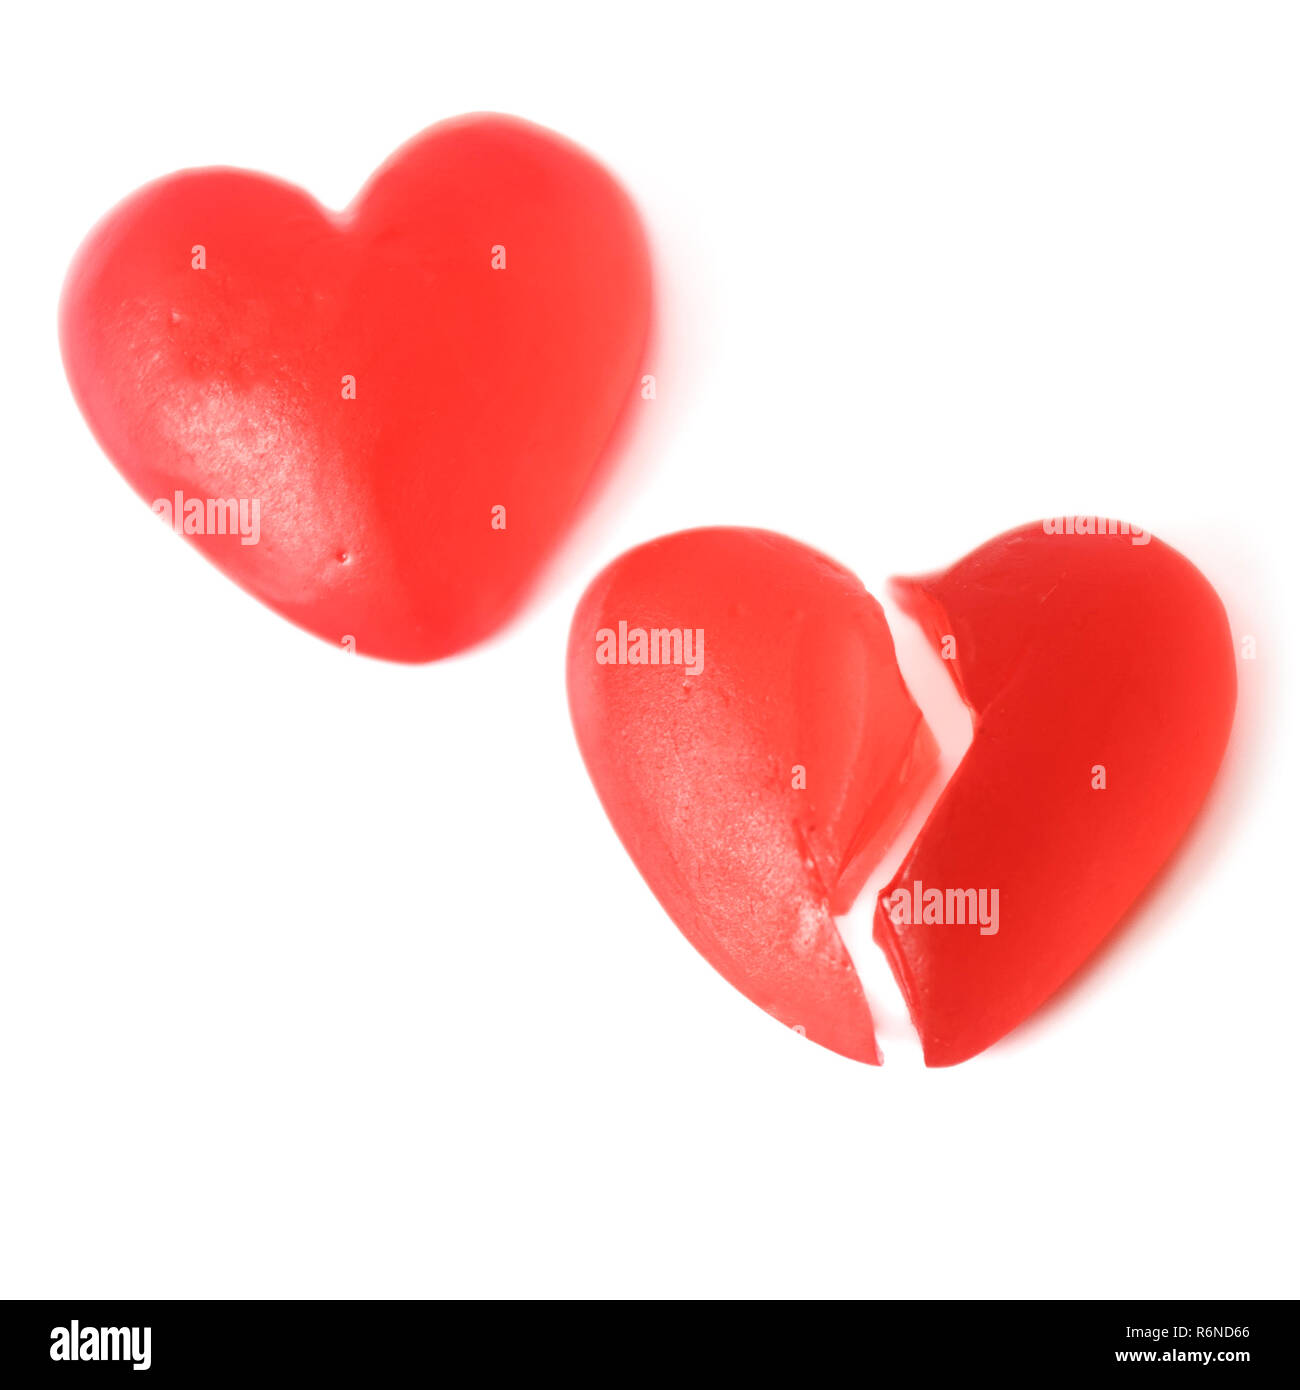 Gebrochene Herzen oder Kummer Konzept mit zwei hellen roten jelly Herz geformten Süßigkeiten nebeneinander mit einem Schnitt in der Hälfte auf weißem Hintergrund Stockfoto